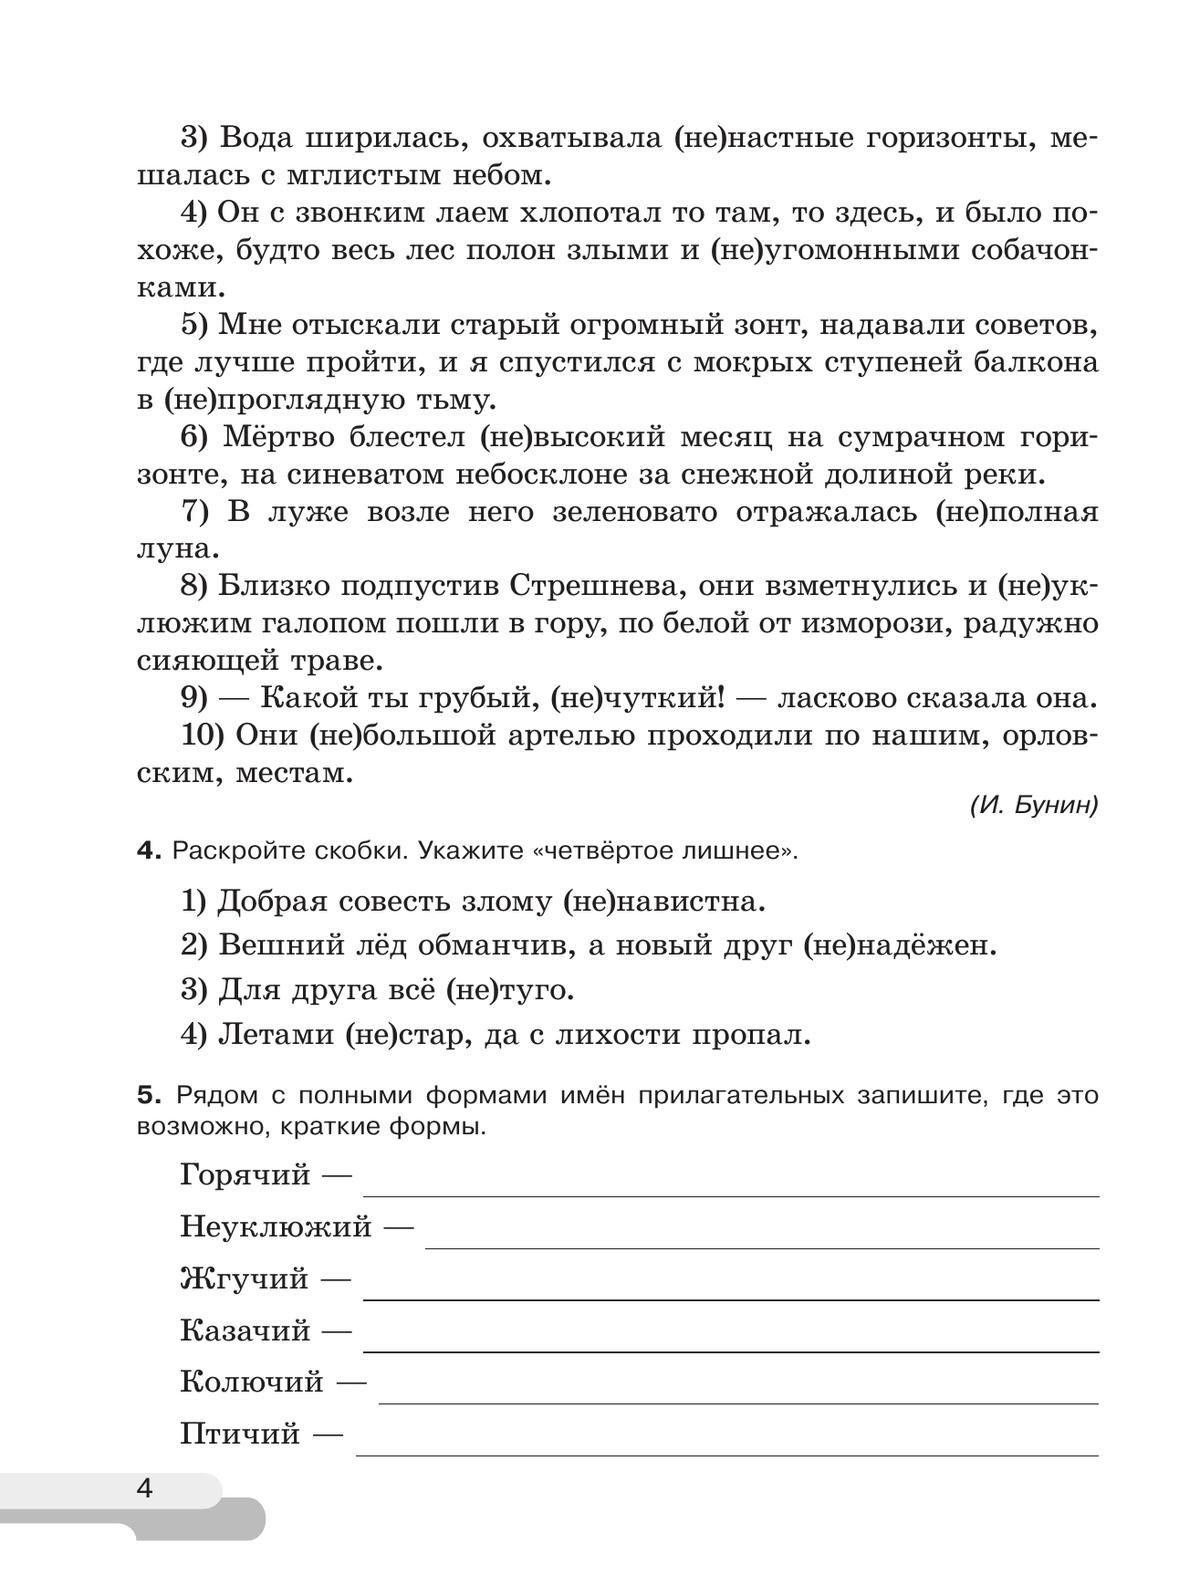 Русский язык. 6 класс. В 2 ч. Часть 2. Рабочая тетрадь 4